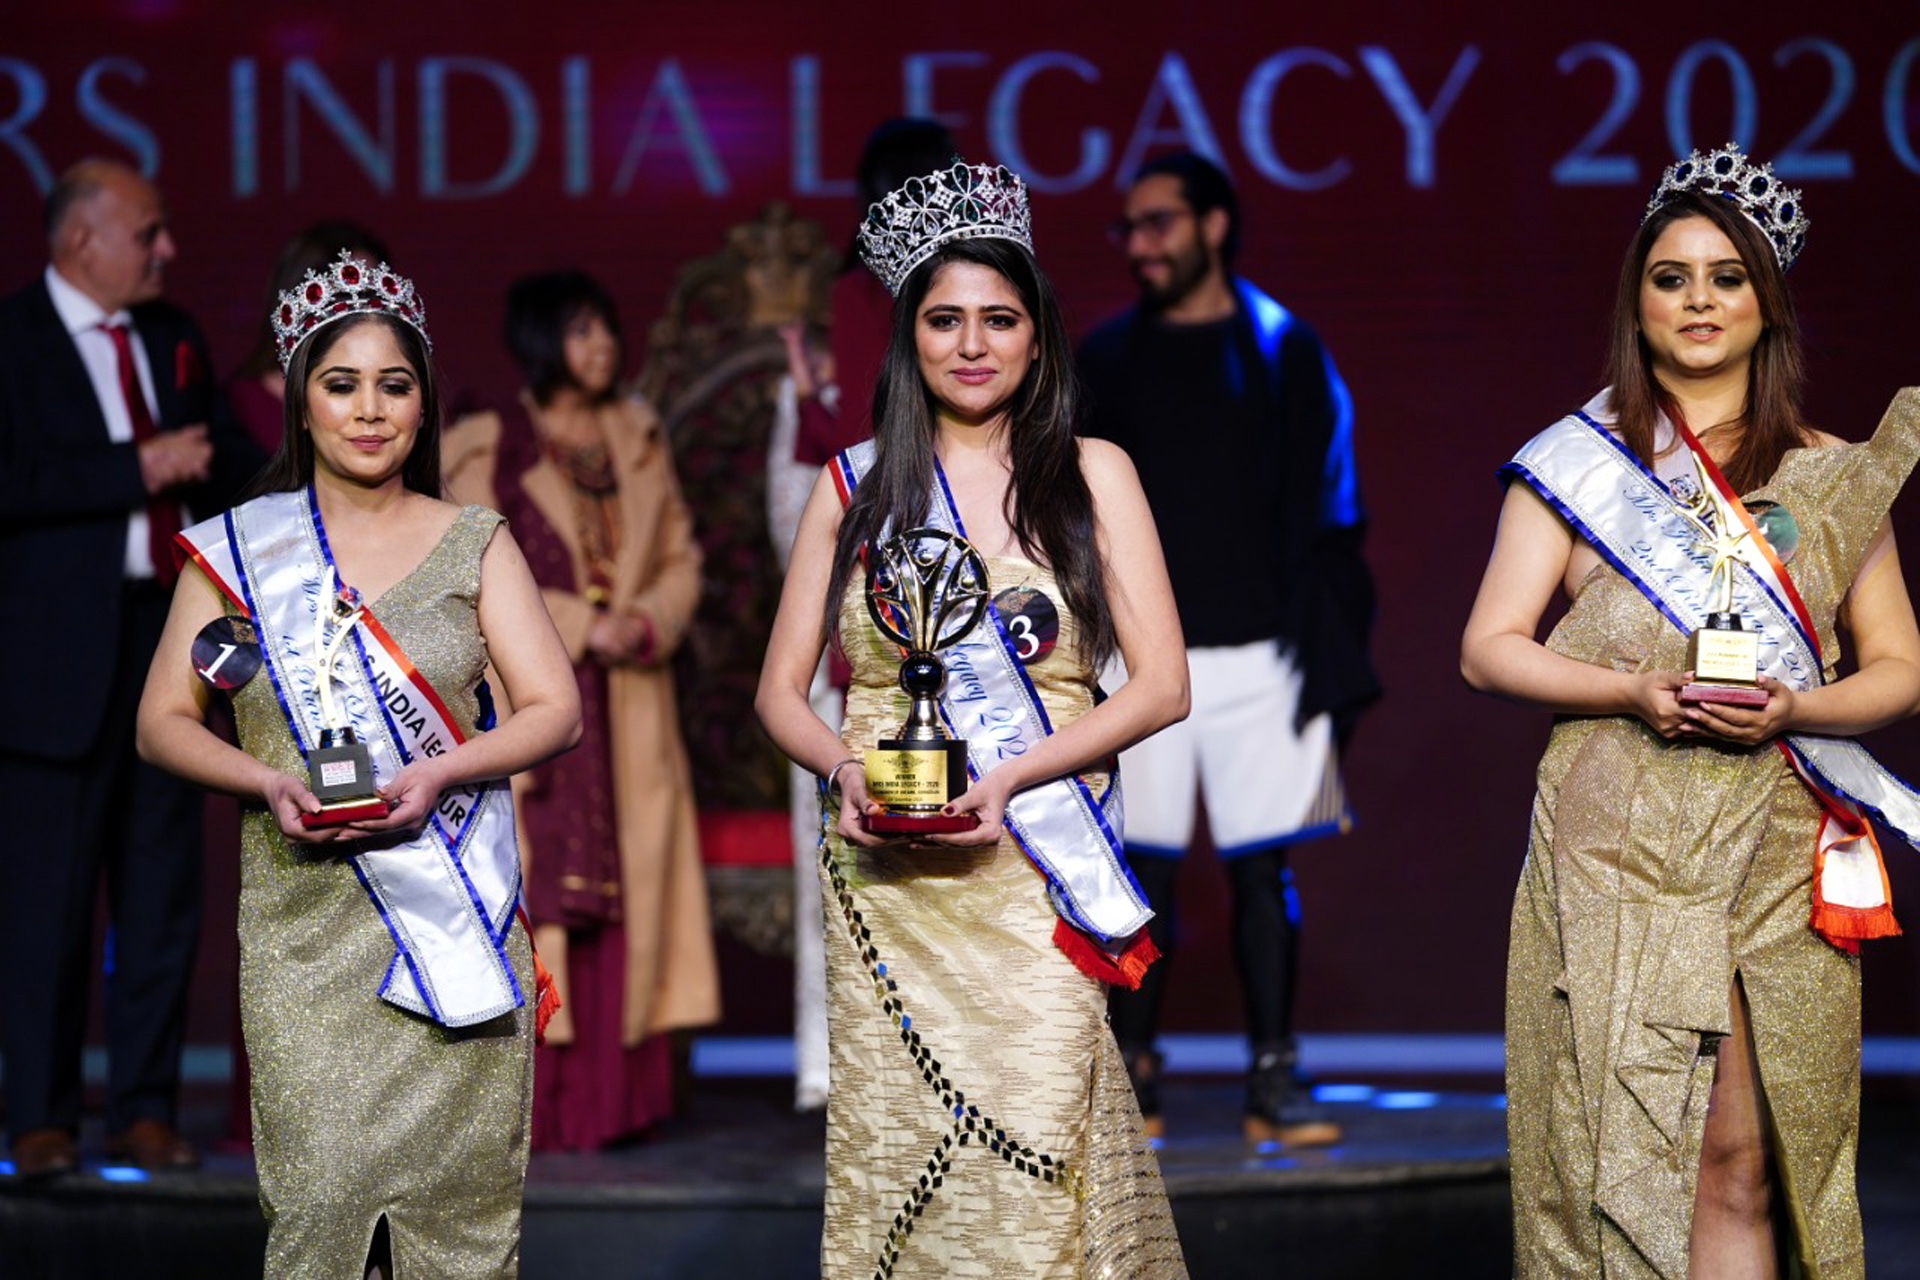 Diadem Miss & Mrs India Legacy 2020 held at Gurugram